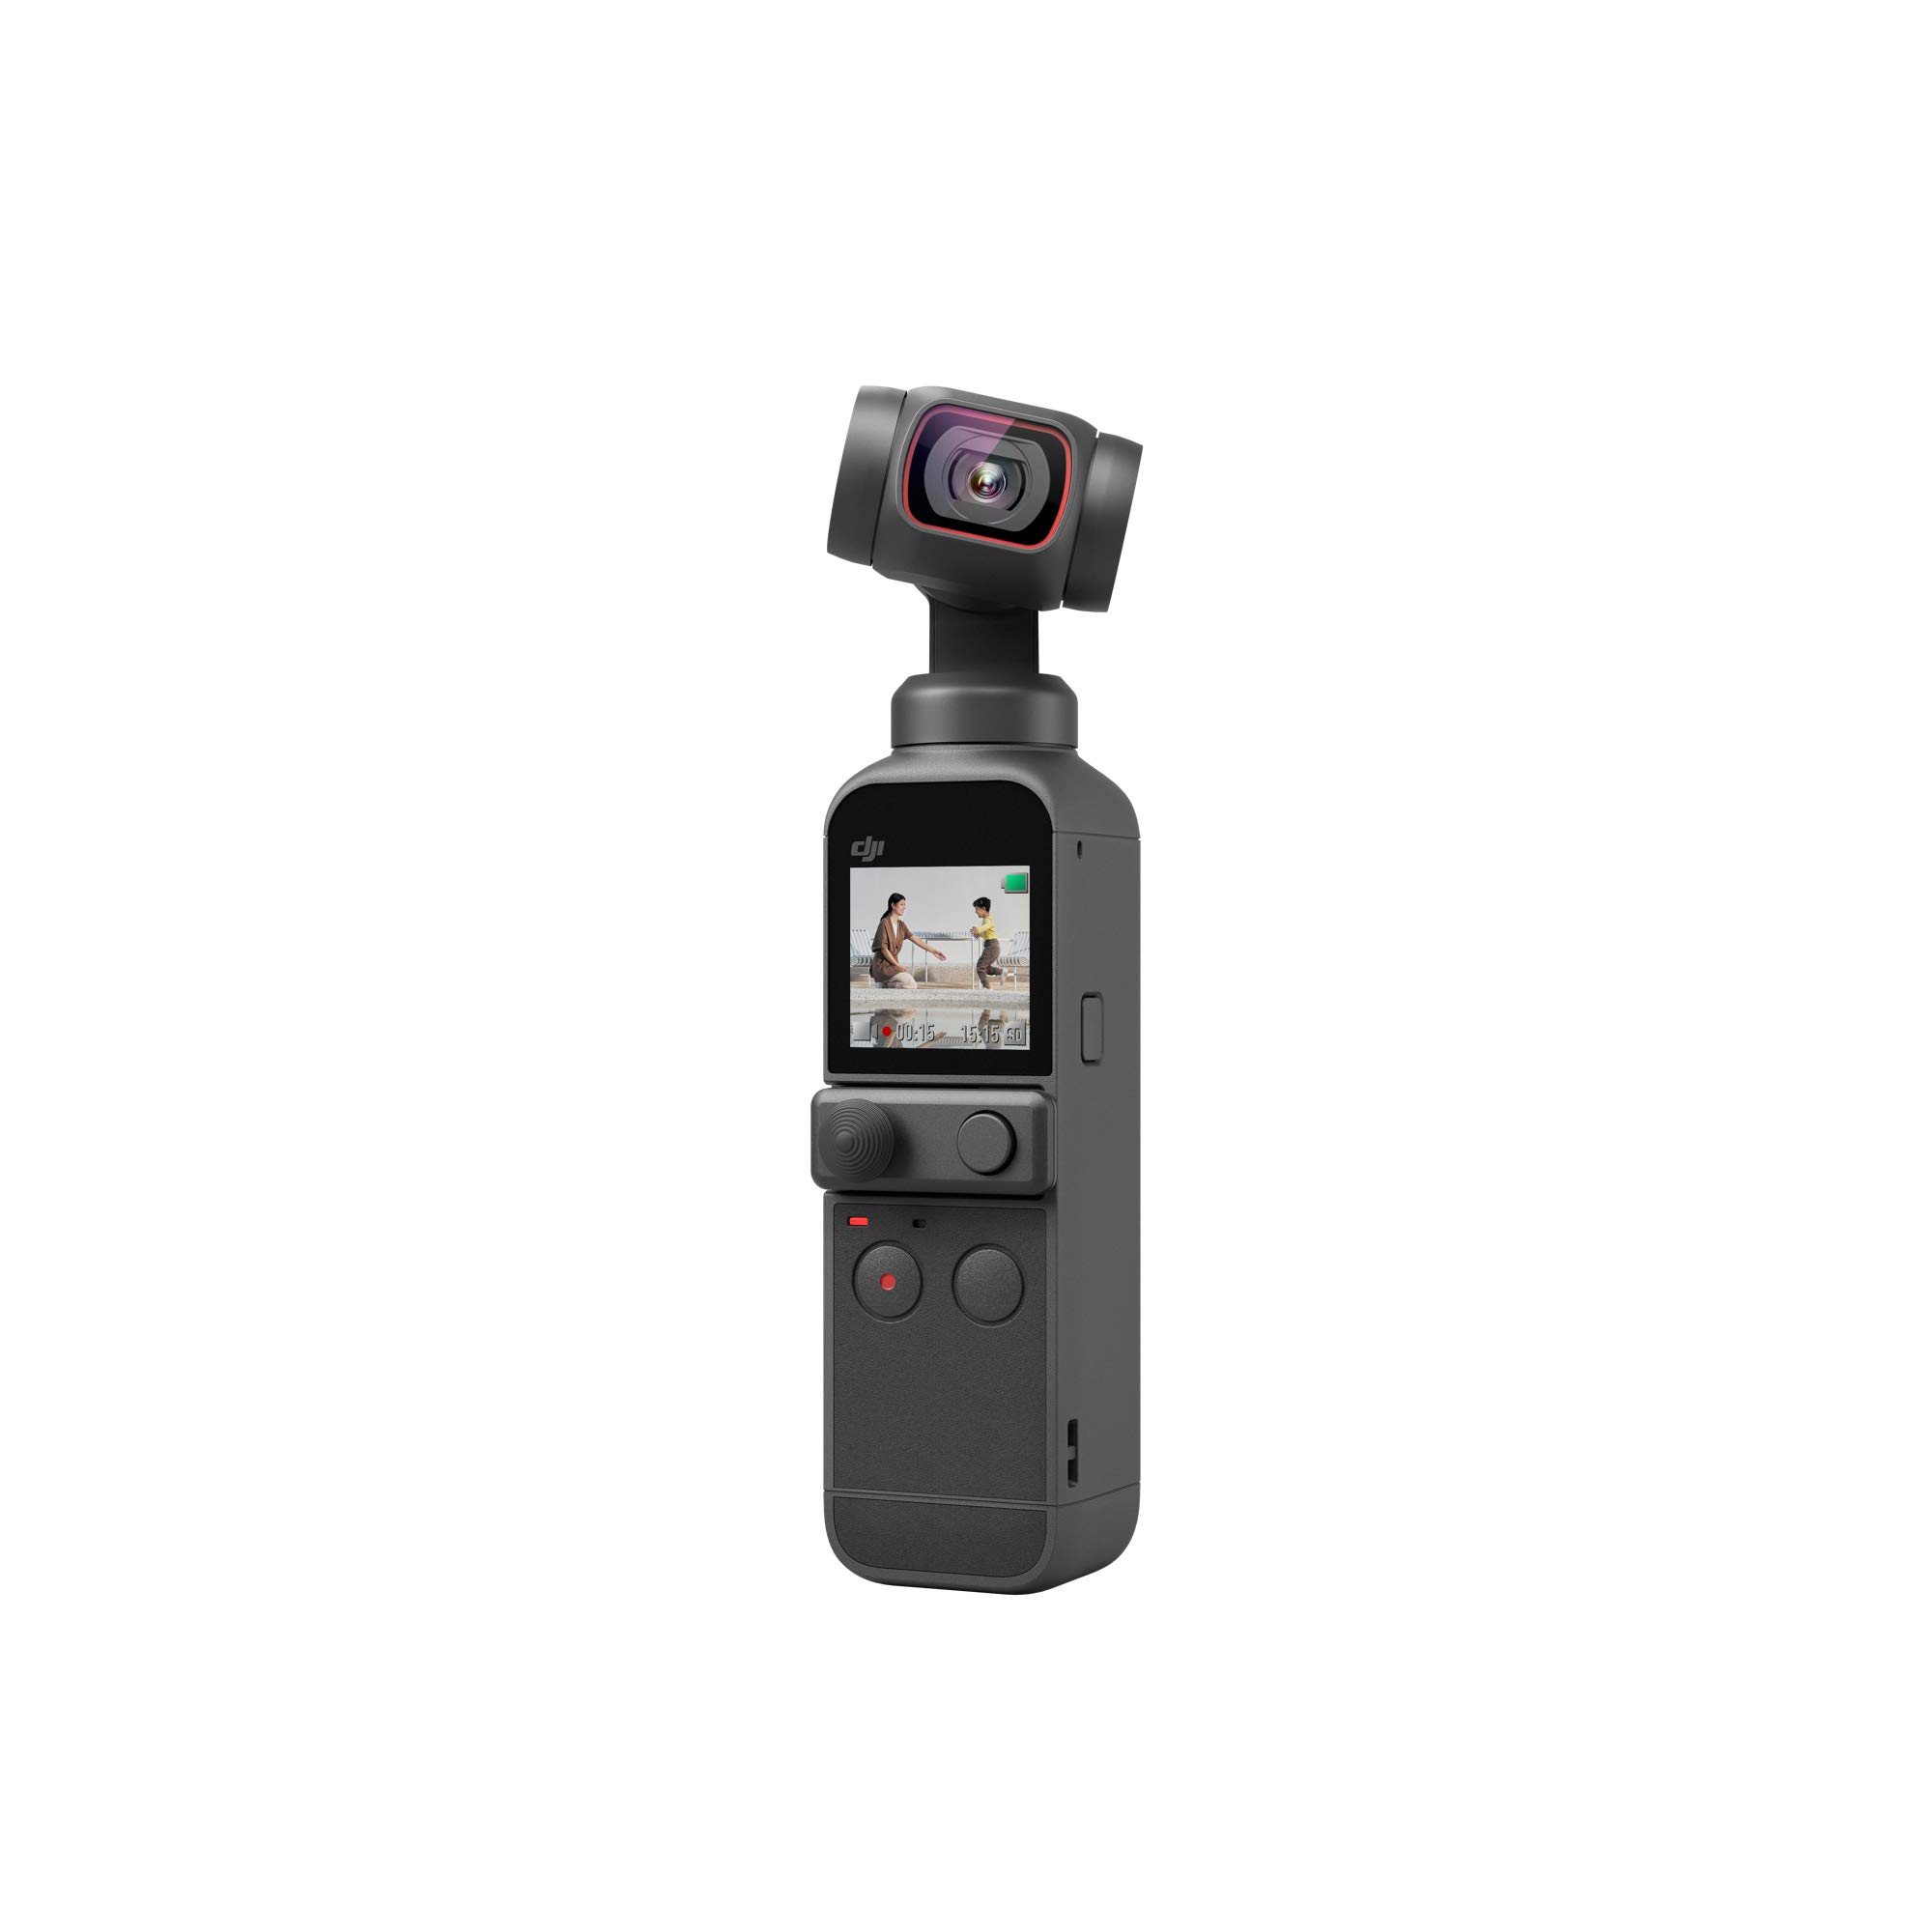  DJI Pocket 2、4Kカメラ付きハンドヘルド3軸ジンバルスタビライザー、1/1.7インチCMOS、64MP写真、顔追跡、YouTube、TikTok、Vlog、AndroidおよびiPhone用ポータブ...